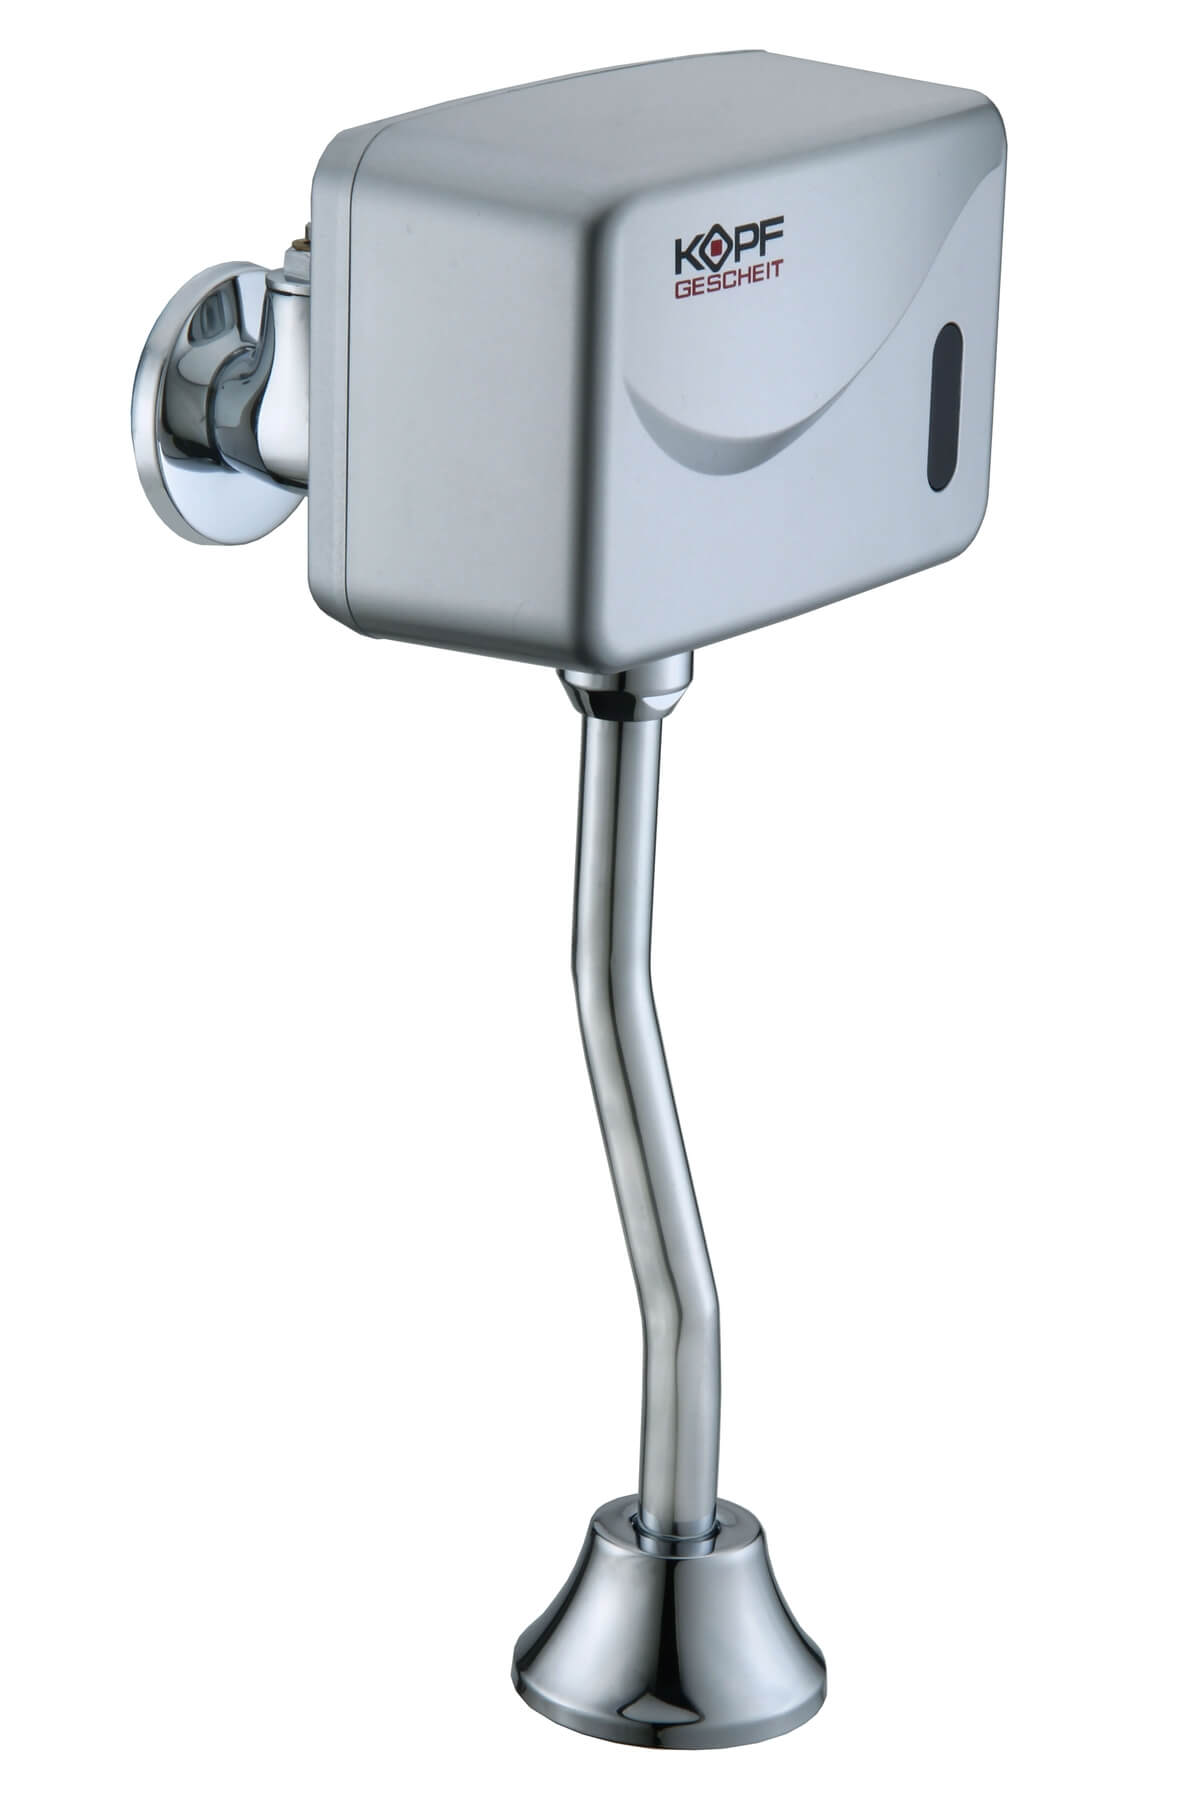 Automatic urinal flush unit KG6524